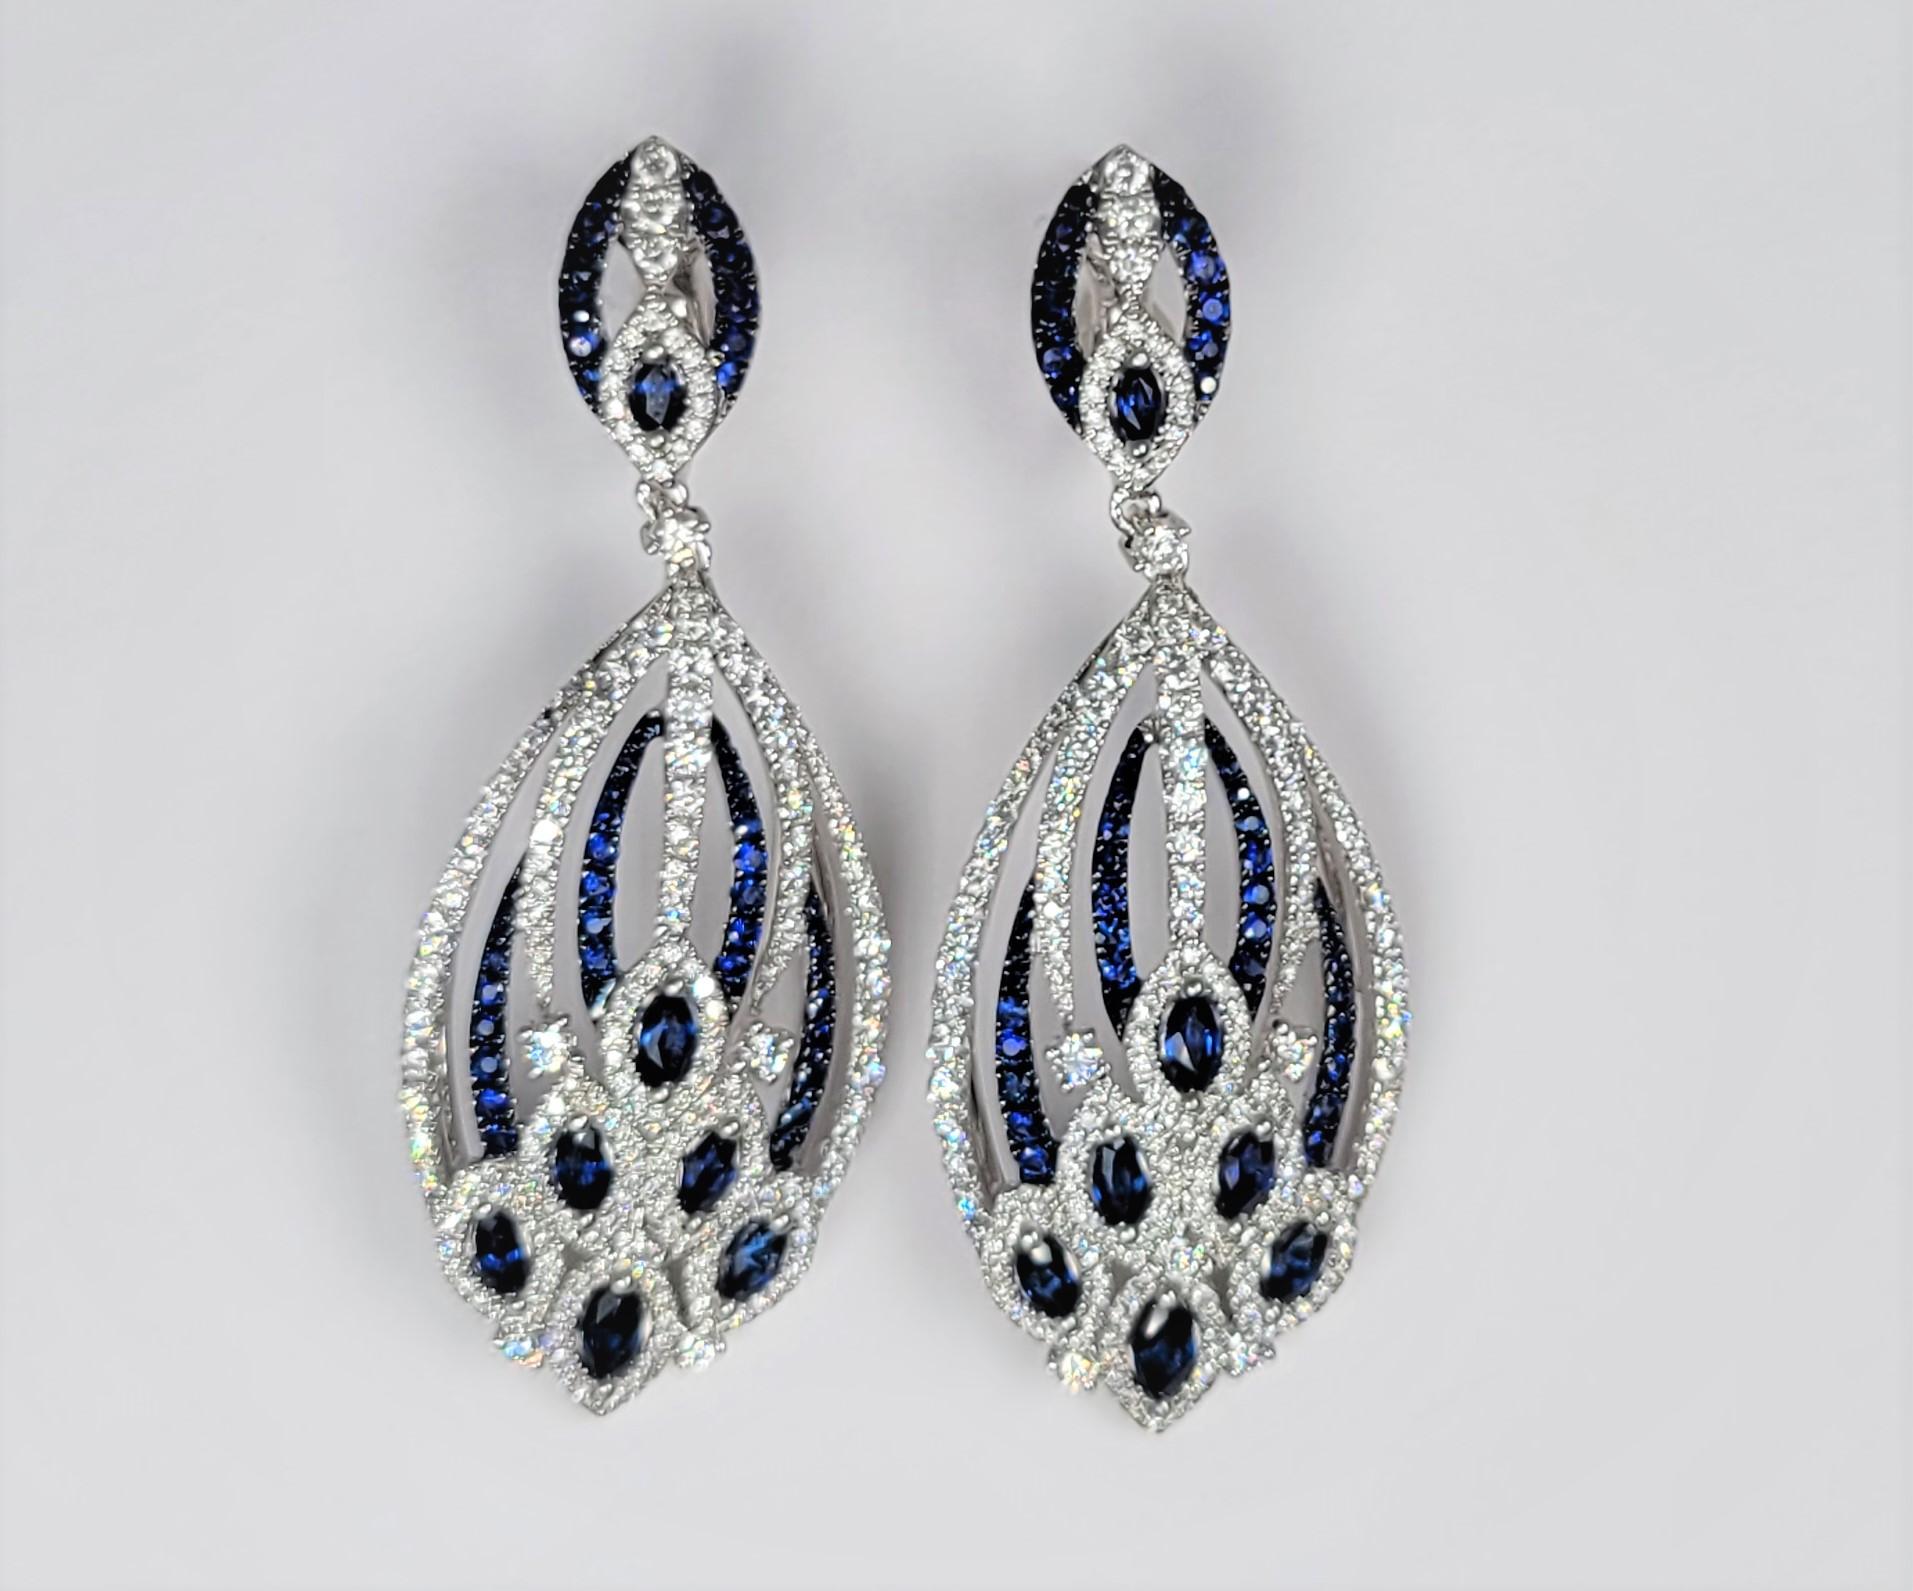 Superbes boucles d'oreilles en diamant et saphir bleu en or blanc 18 carats.  Le rhodium noir accentue les saphirs bleus.  Estampillé LTJ.